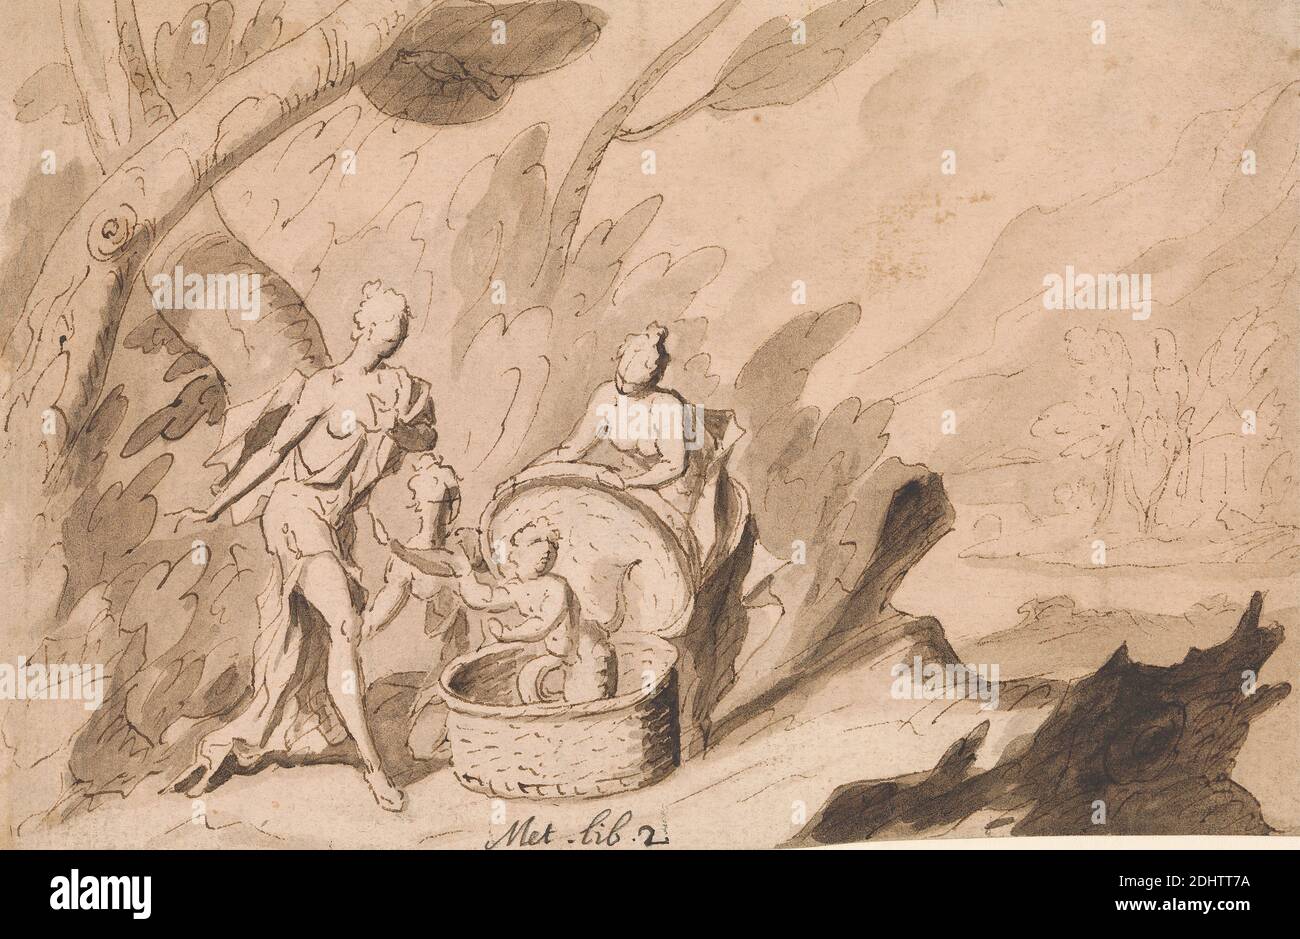 Le Figlie di Cetrops scoprono Ericthonius: Ovidio, Metamorphoses, Libro 2, Thomas Carwitham, Active 1723, British, 1723, penna, inchiostro e marrone lavano su carta media, leggermente testurizzata, bianca, foglio: 5 × 7 1/2 pollici (12.7 × 19.1 cm), cesto, corvo (animale), Erichthonius, nascosto in un cesto, è consegnato da Minerva ad Aglauros e alle sue sorelle (figlie di Cetrops) per essere curato, figure, foresta, tema letterario, Metamorfosi di Ovidio, soggetto religioso e mitologico Foto Stock